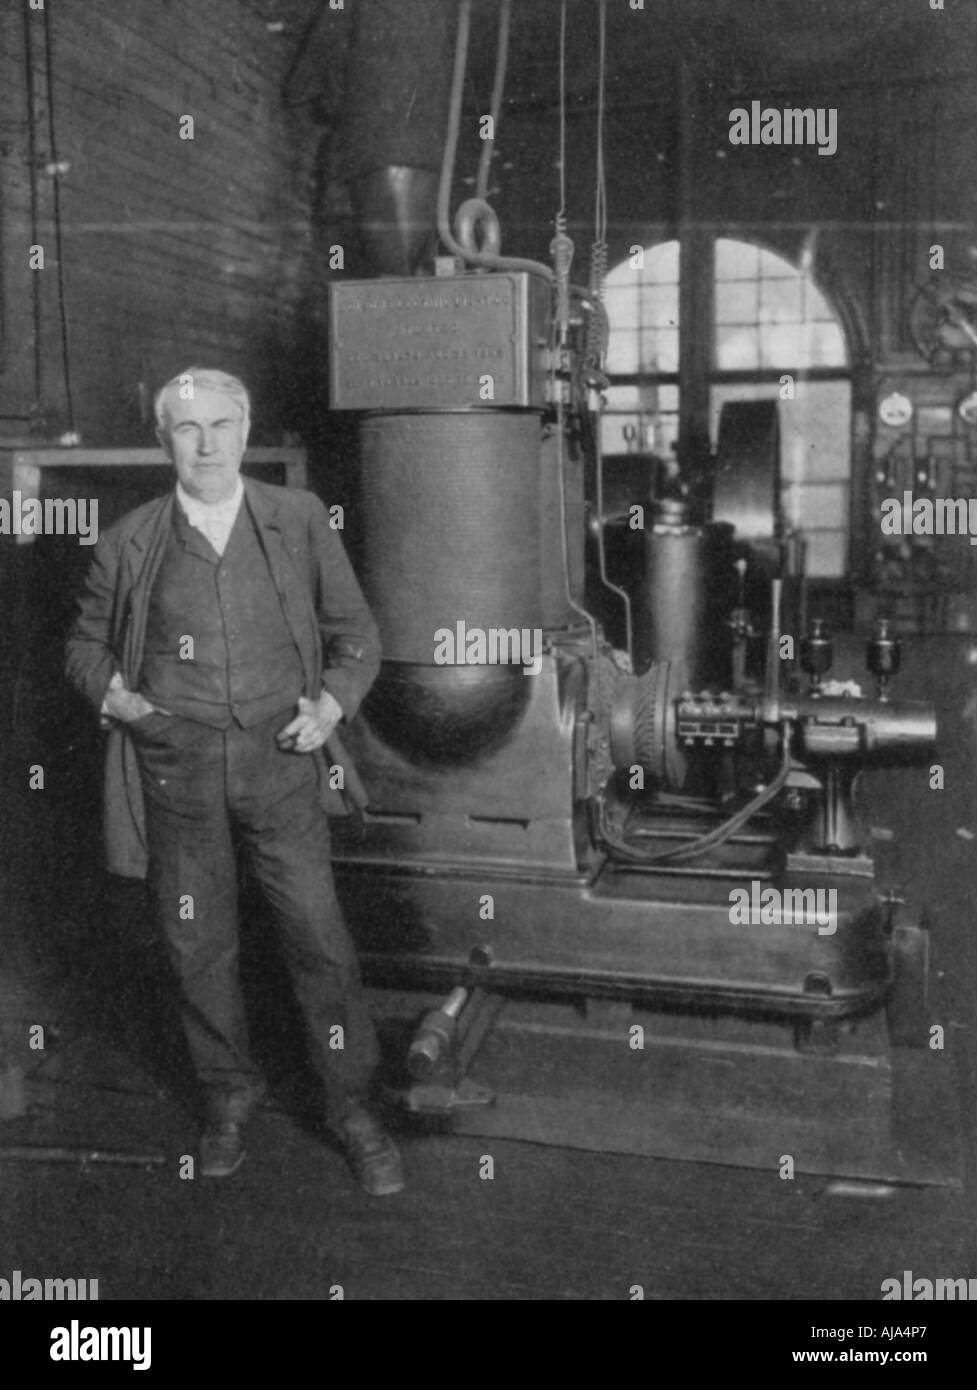 Thomas Alva Edison, inventeur américain, avec sa première dynamo pour produire une lumière électrique, 1880. Artiste : Inconnu Banque D'Images